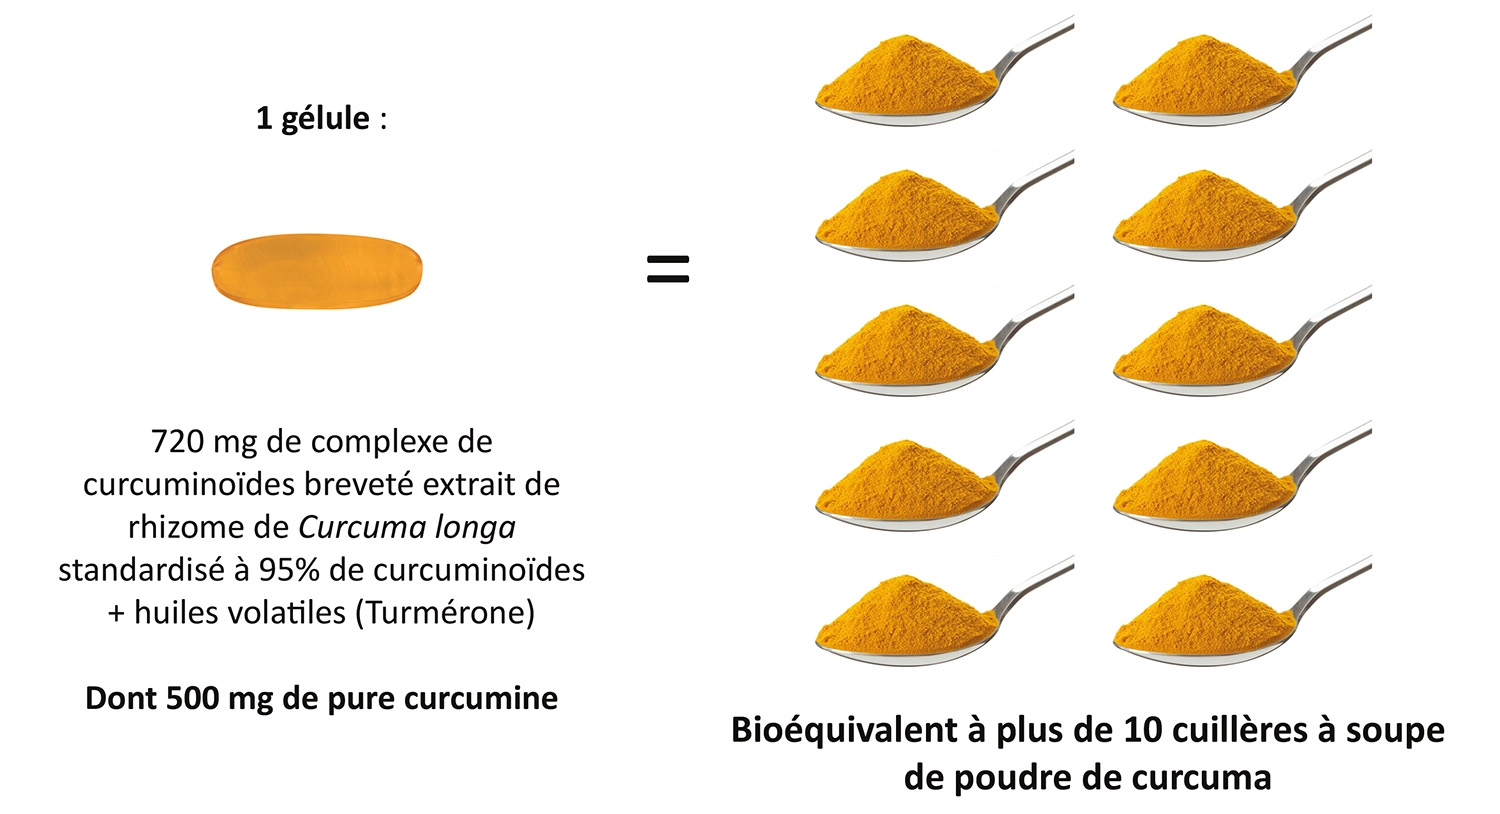 Une gélule de CurcumActif 2 500 mg correspond à plus de 10 cuillères à soupe de poudre de curcuma